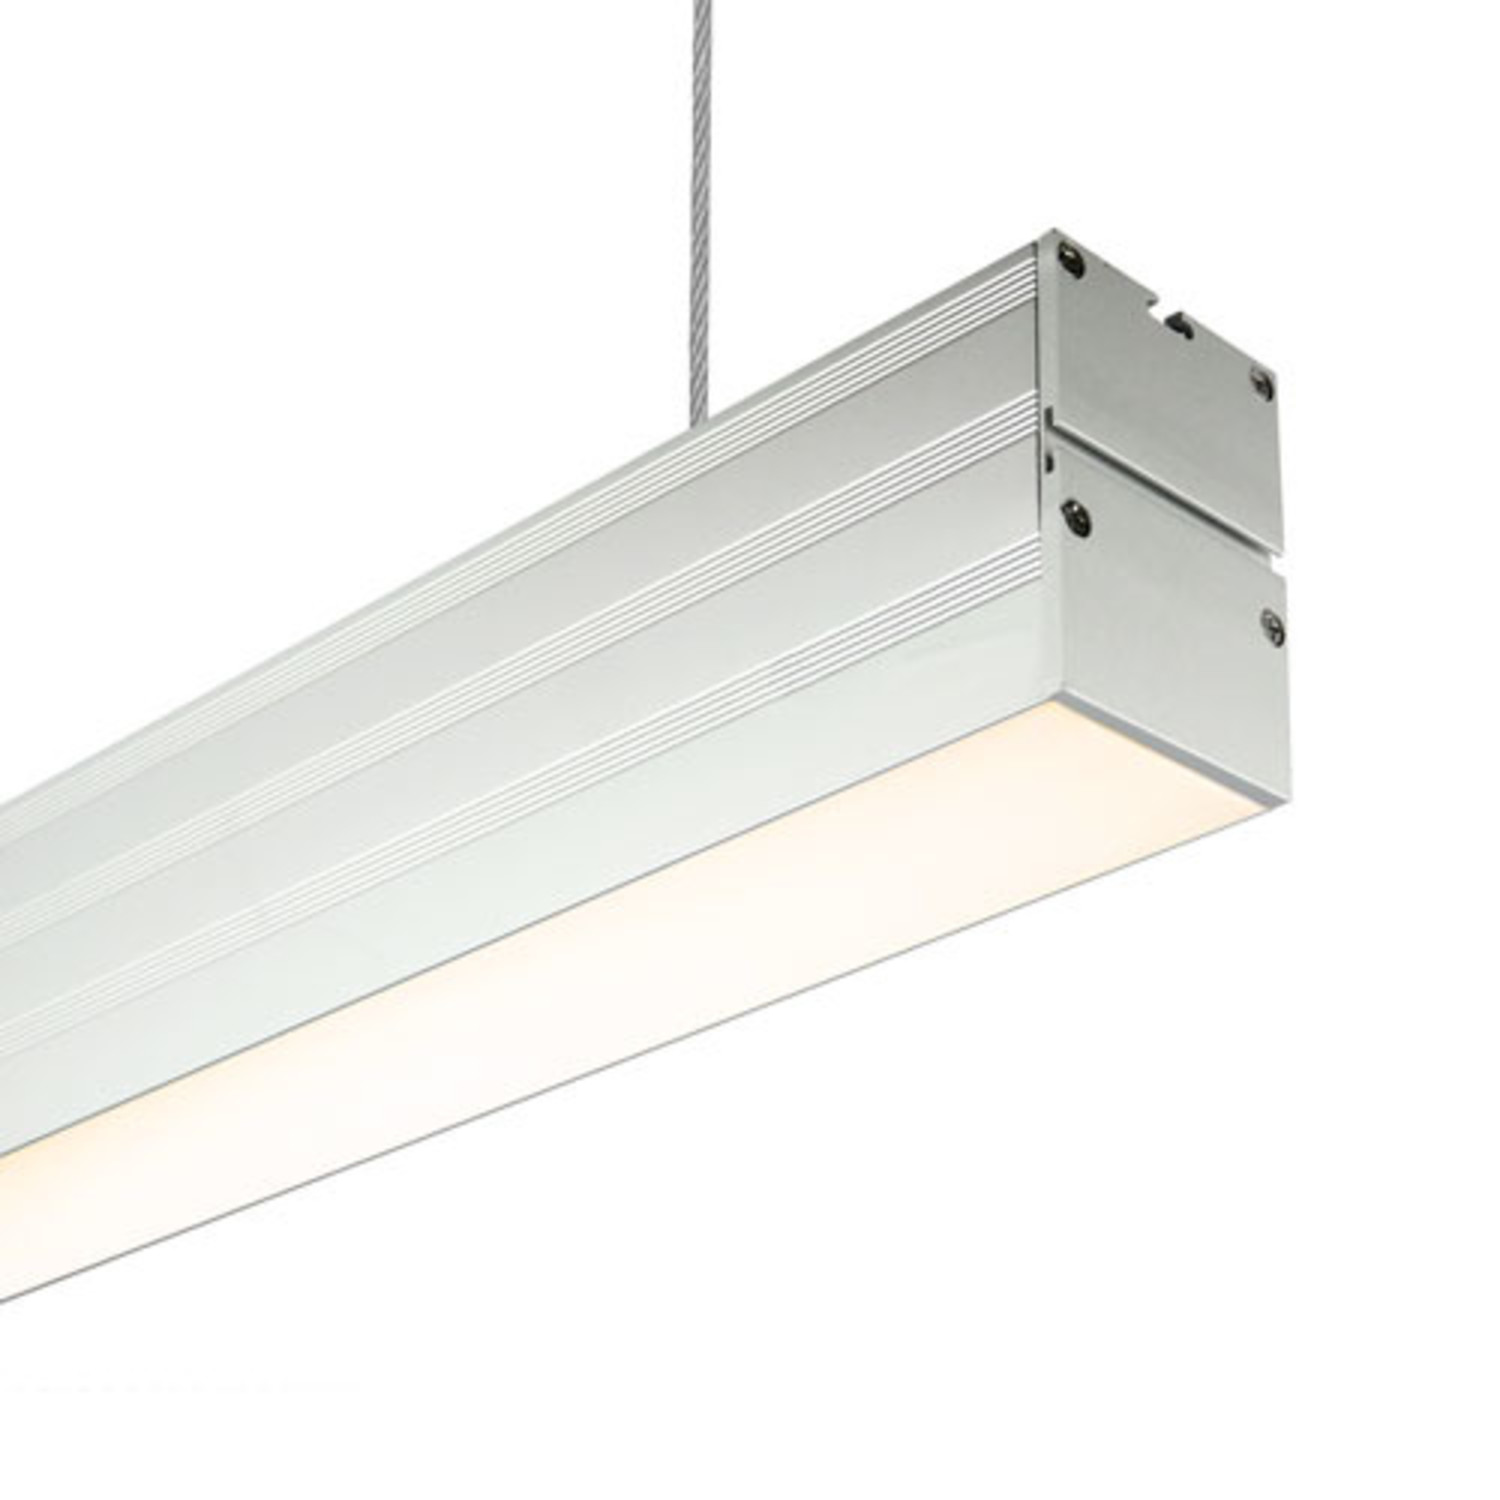 Manieren Controversieel Onderzoek Hangende LED Lichtbalken 120cm ☀ Bespaar 60% | LEDWINKEL-Online -  LEDWINKEL-Online